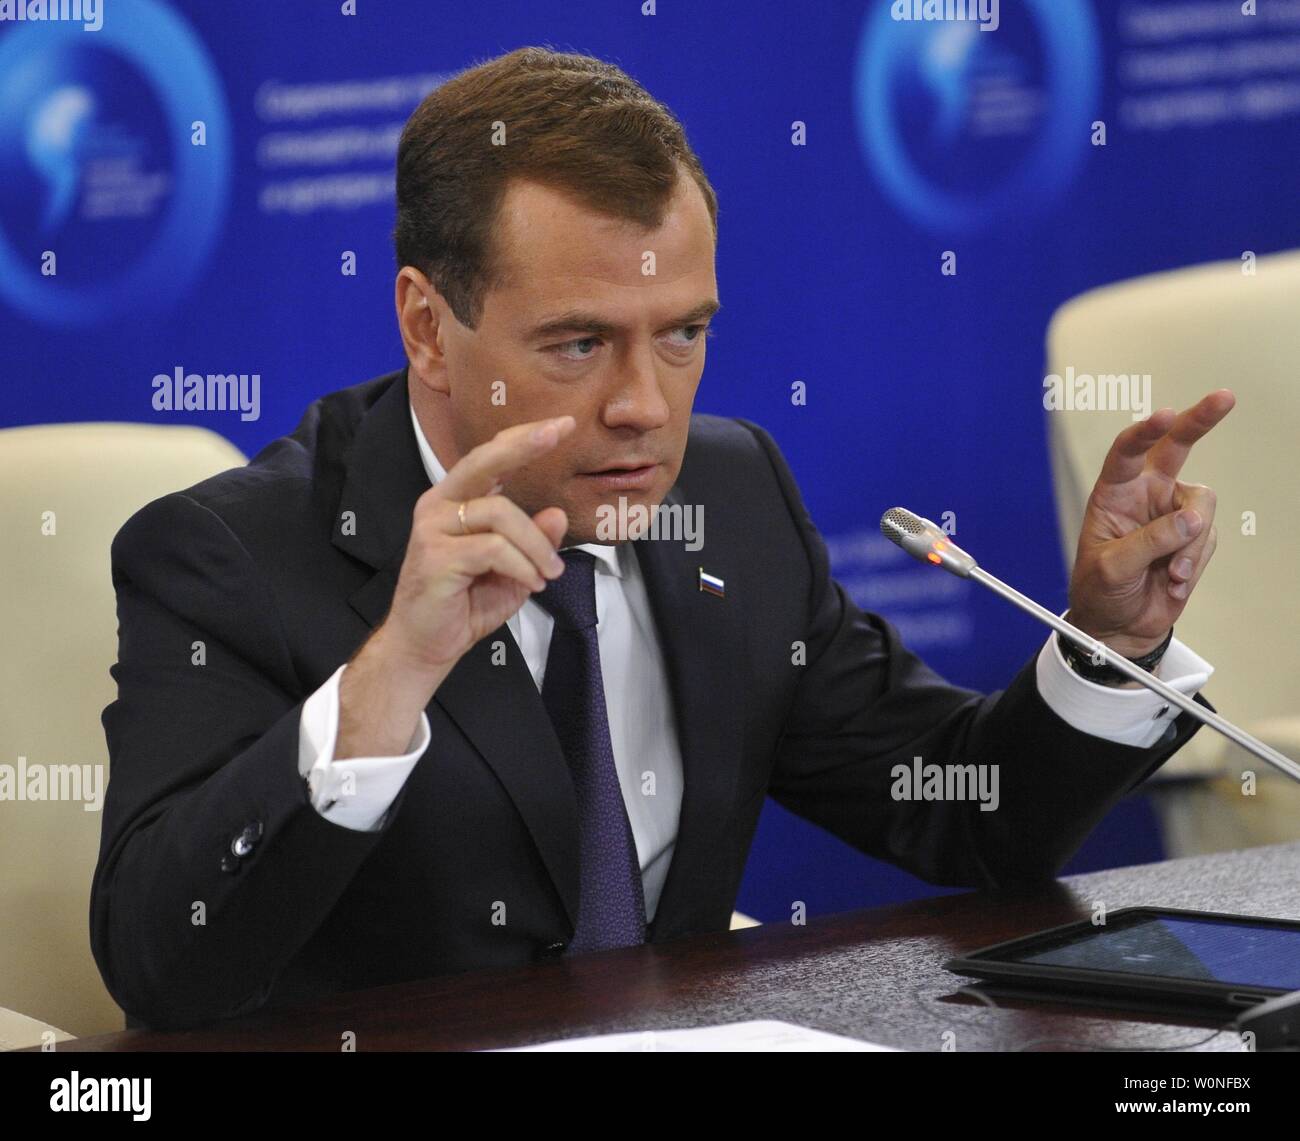 Der russische Präsident Dmitri Medwedew besucht die Global Policy Forum in Jaroslawl am 10. September 2010. Medwedew sagte am Freitag "ich kategorisch nicht mit denen, die behaupten, dass es keine Demokratie in Russland, dass es durch die autoritäre Tradition ausgeschlossen ist damit einverstanden." UPI/Alex Volgin Stockfoto